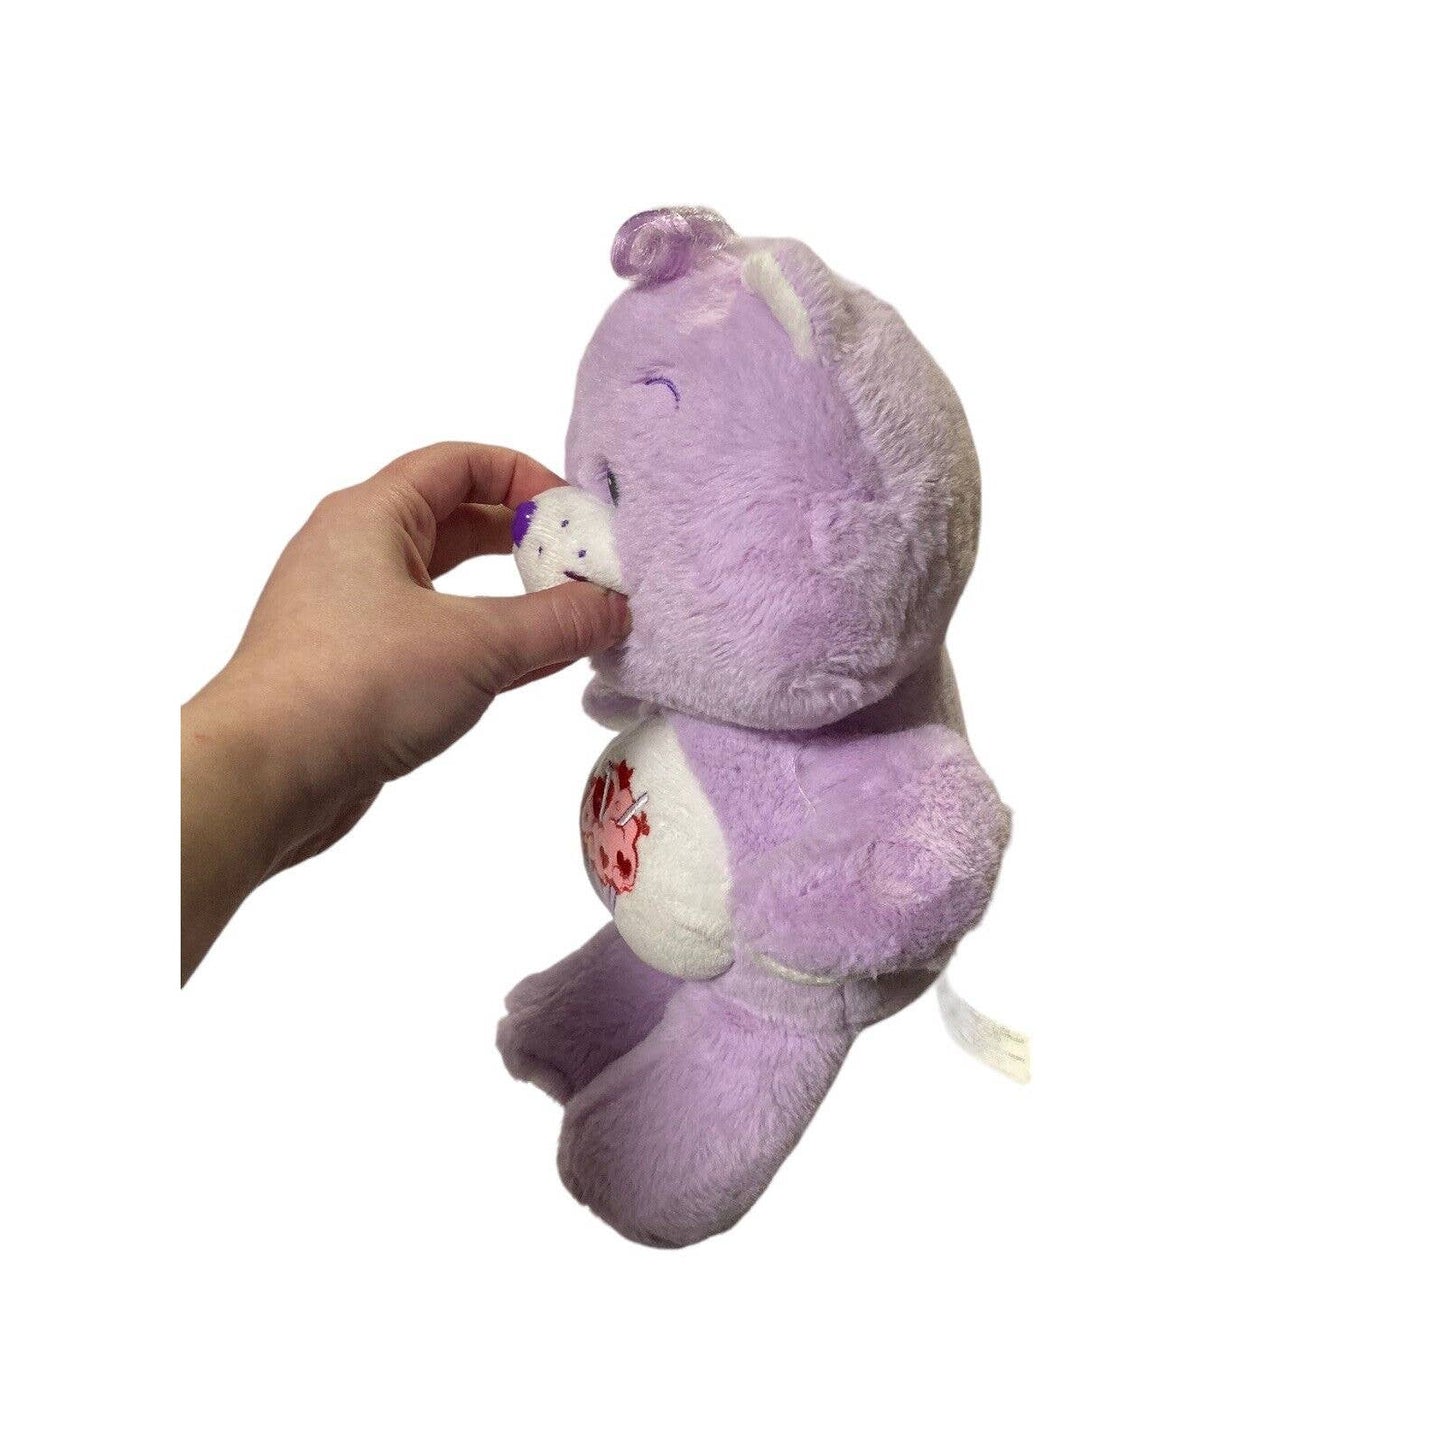 Care Bears 2019 Milkshake Purple Share Bear Sundae Valentines Day Hearts Plush